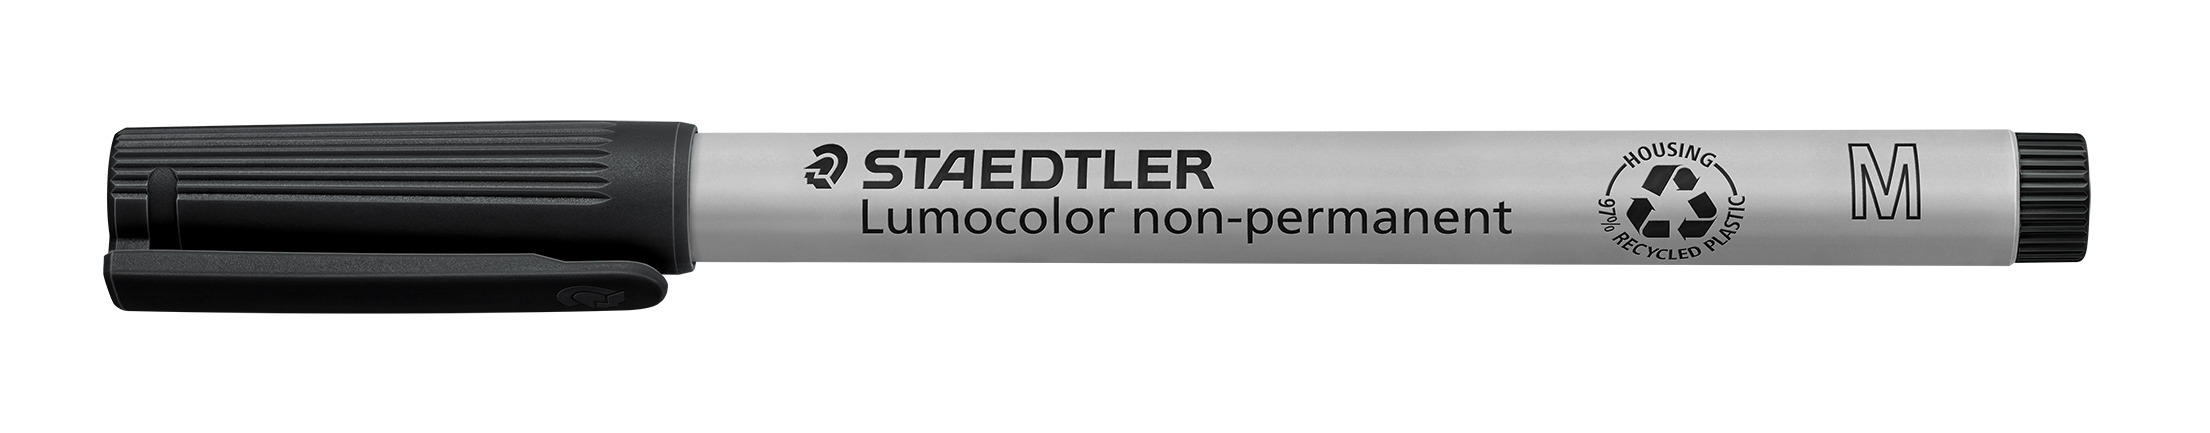 STAEDTLER® OH-Stift, Lumocolor® 315, M, nachfüllbar, non-permanent, Rundspitze, 1 mm, Schaftfarbe: grau, Schreibfarbe: schwarz